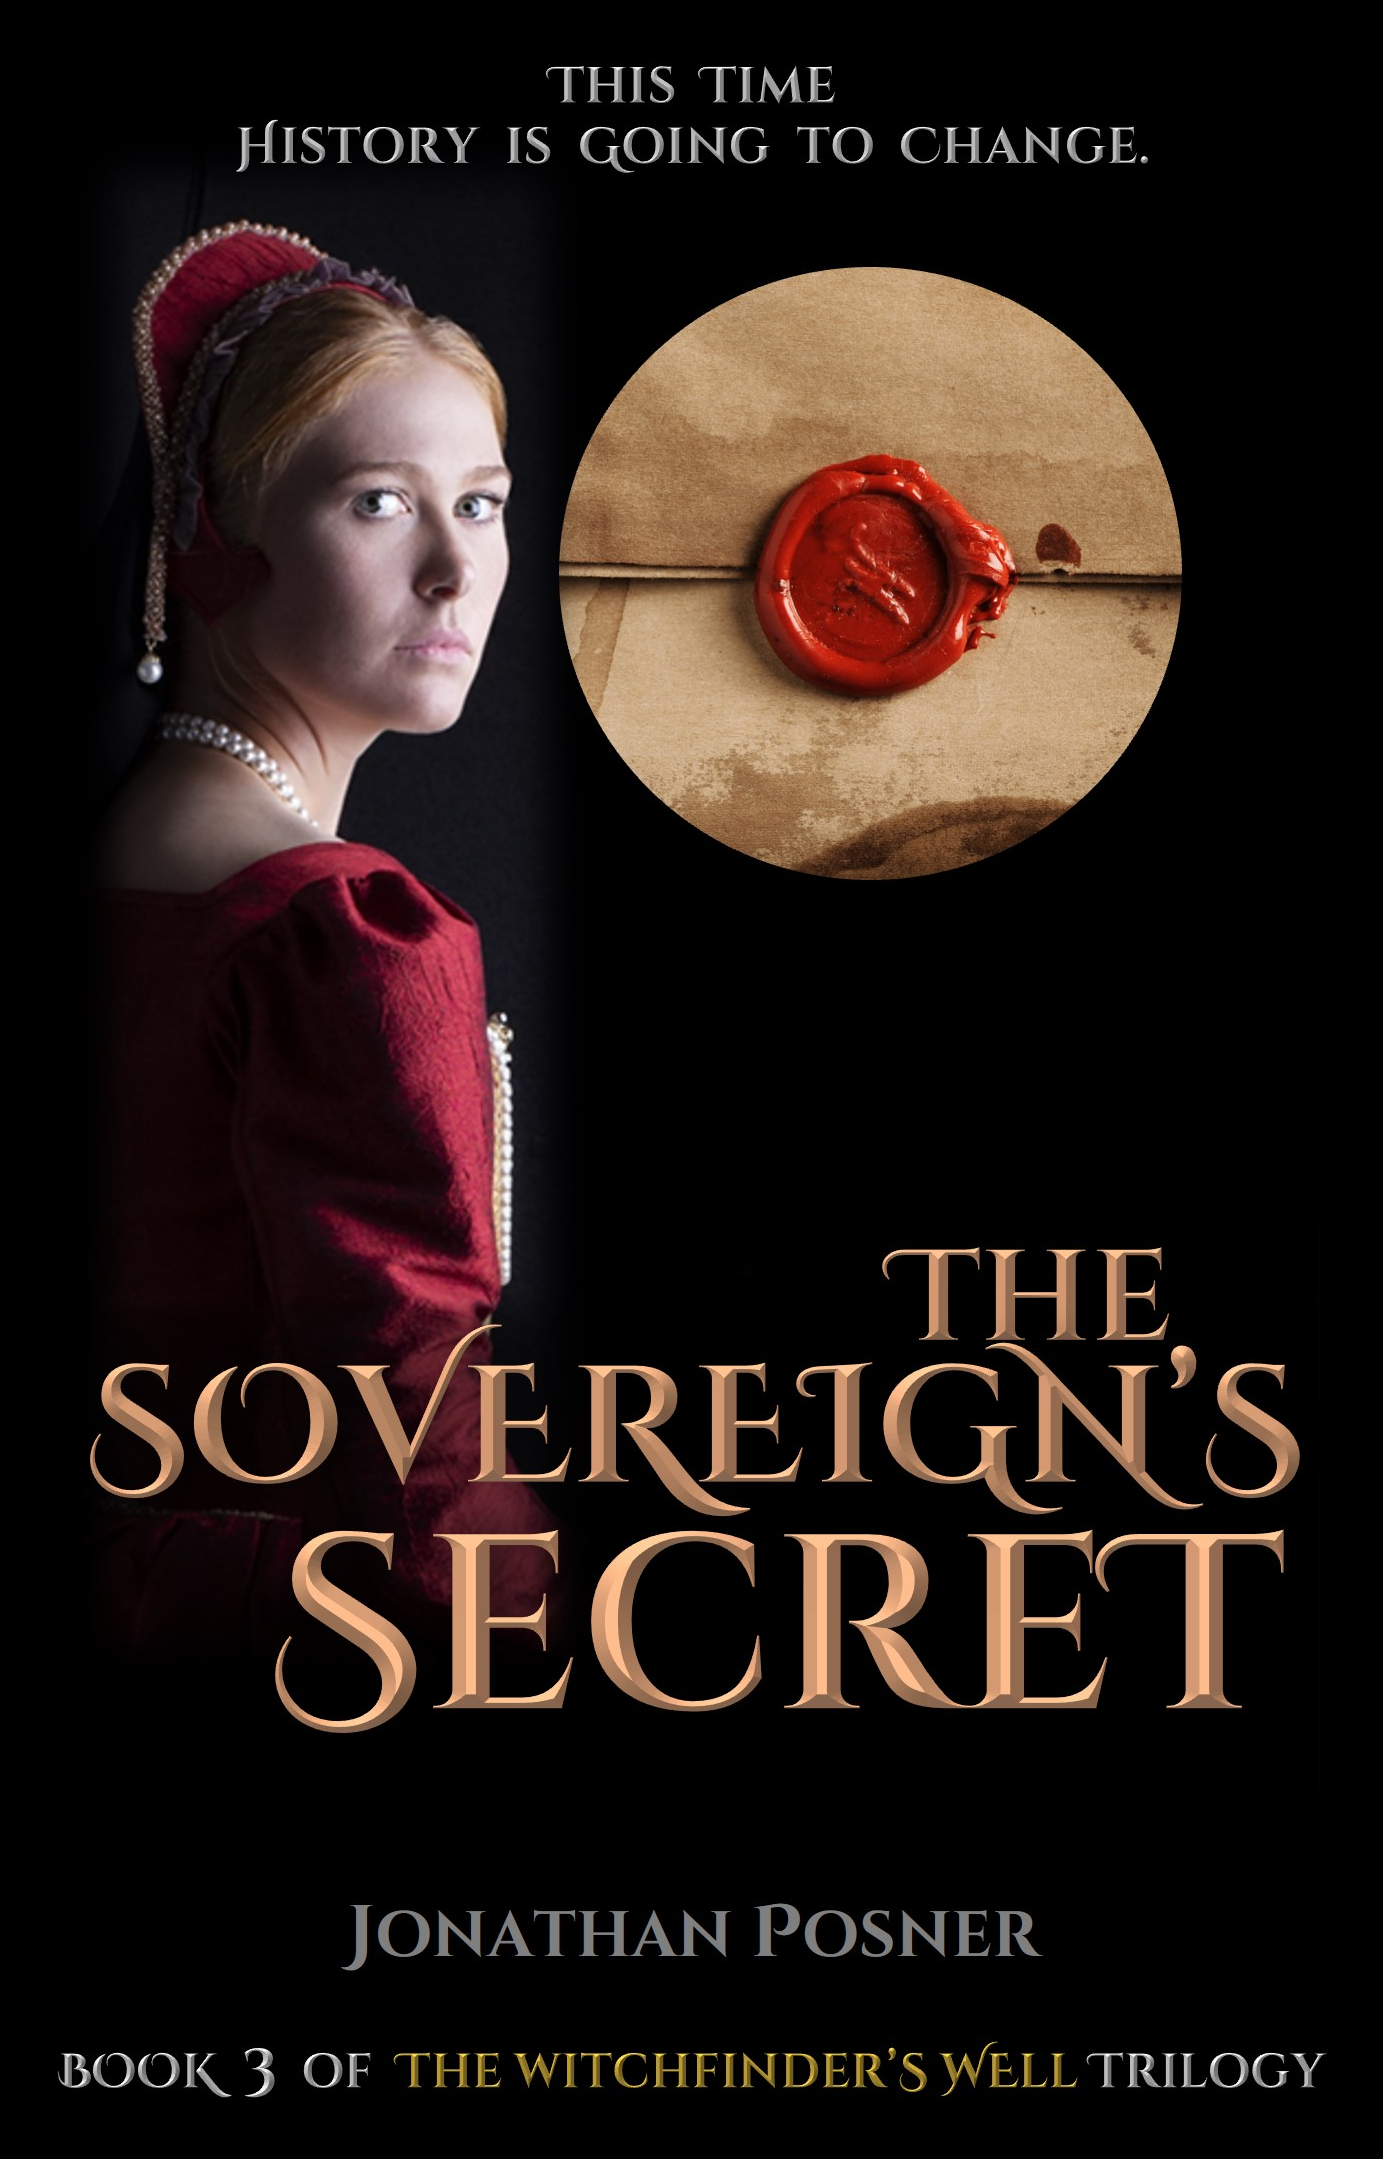 The Sovereign’s Secret